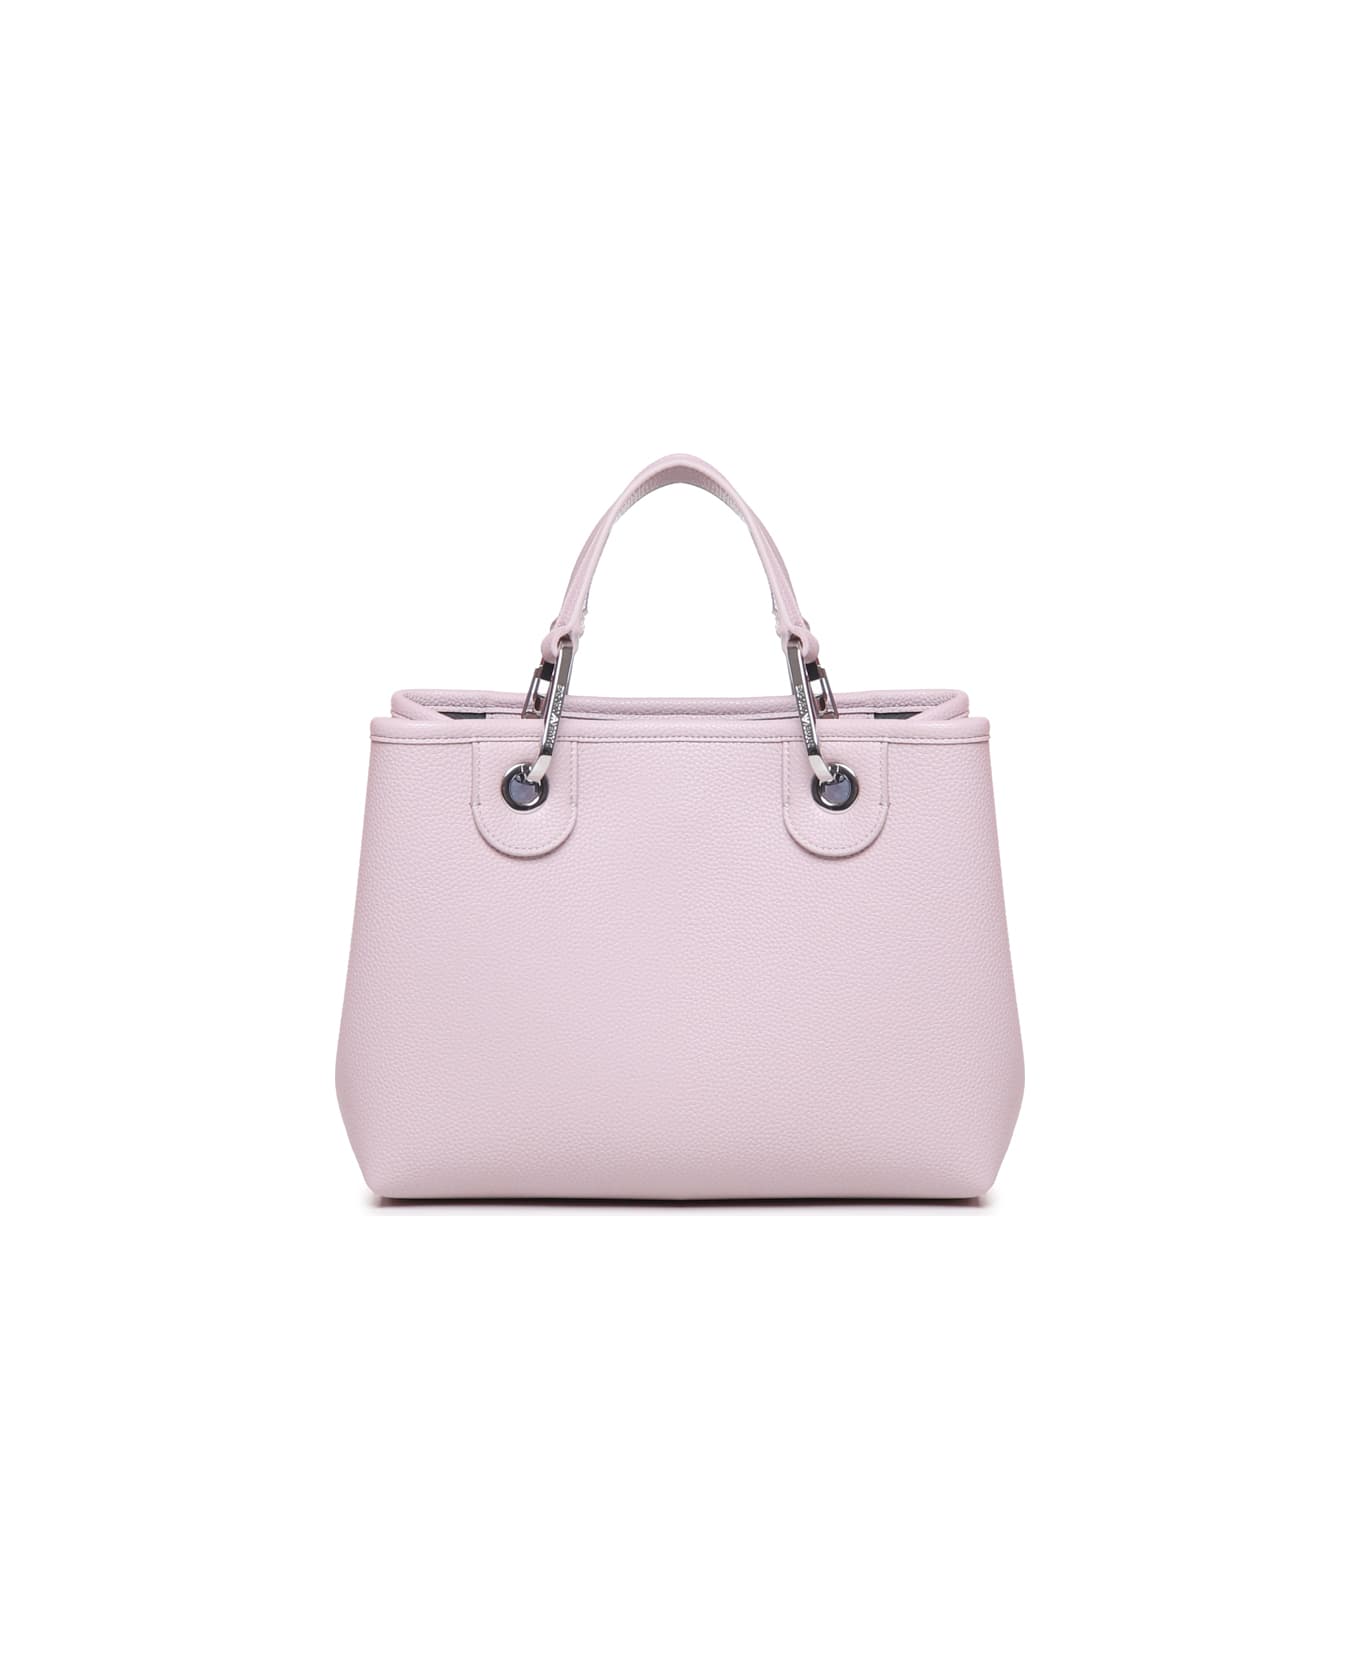 Emporio Armani Myea Small Bag - Pink